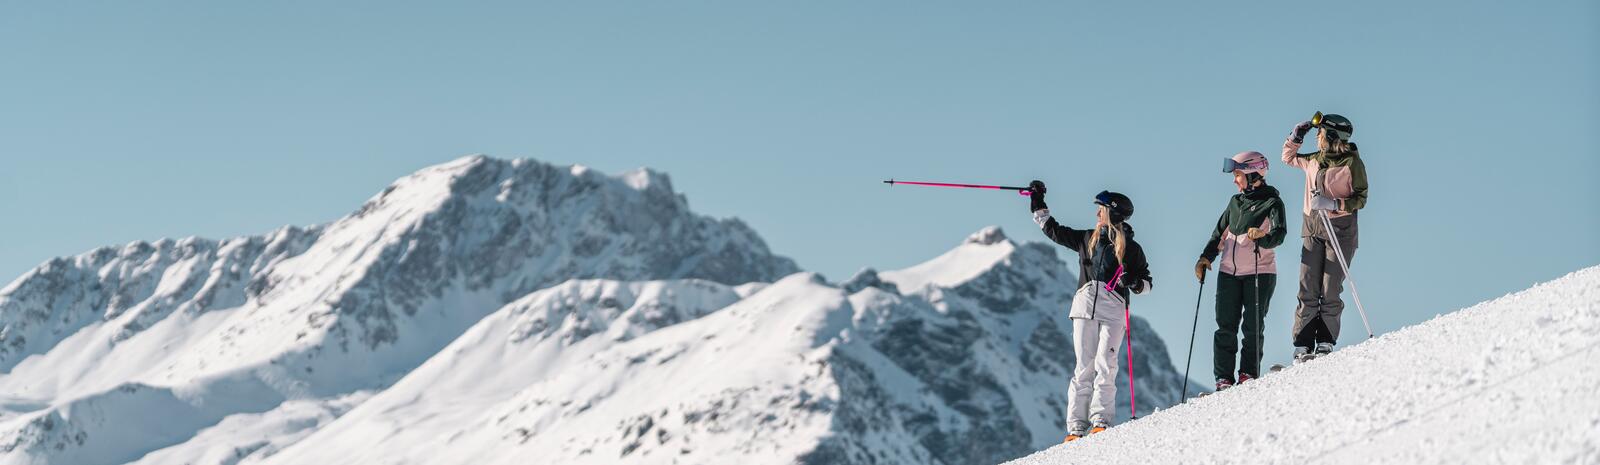 Skifahren in Saalbach Hinterglemm | © Christoph Johann